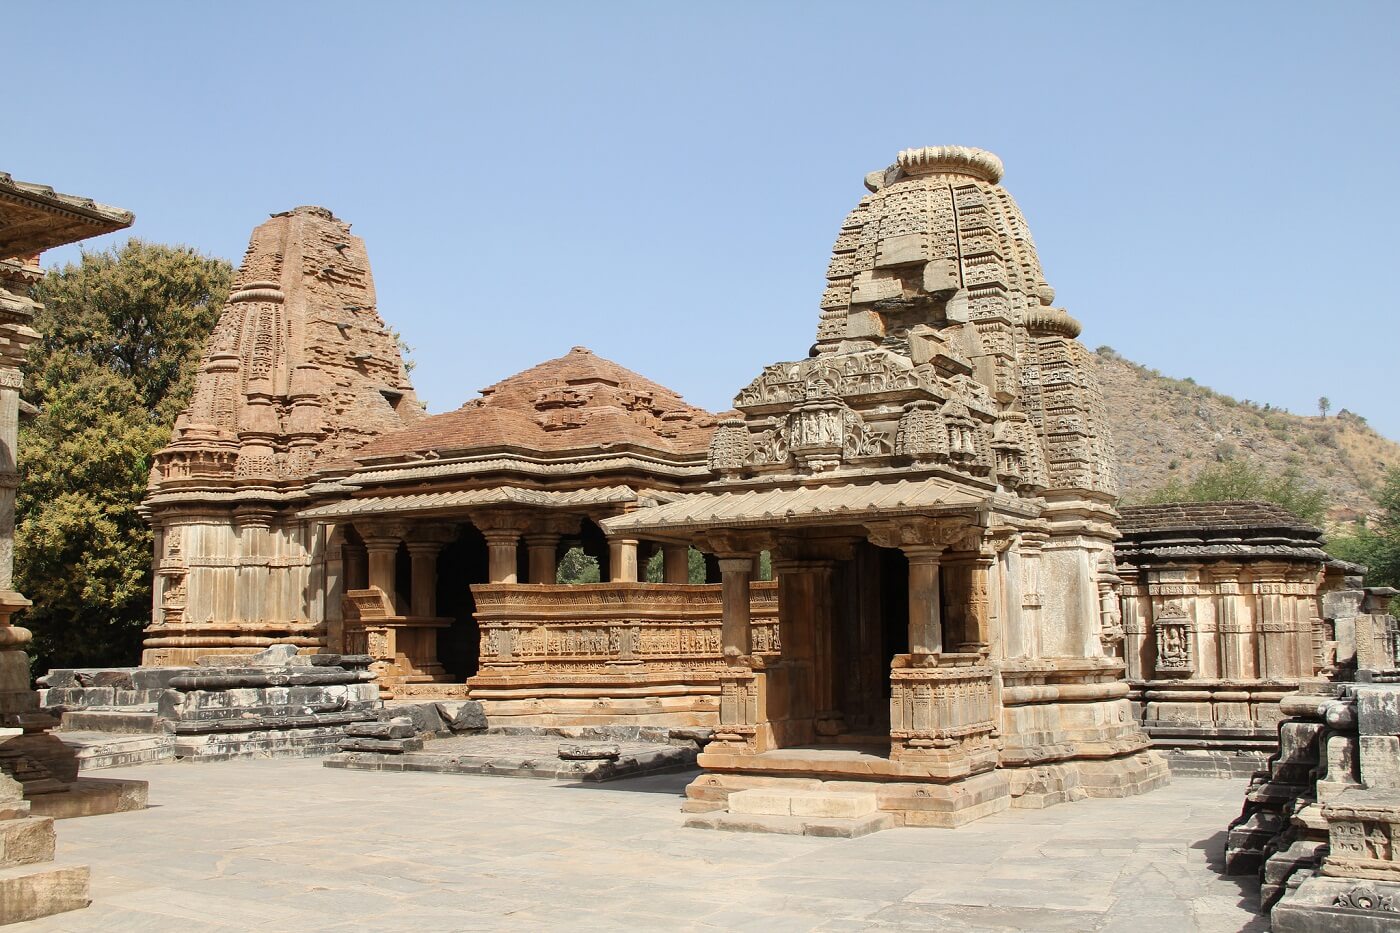 Eklingji Temple, Udaipur